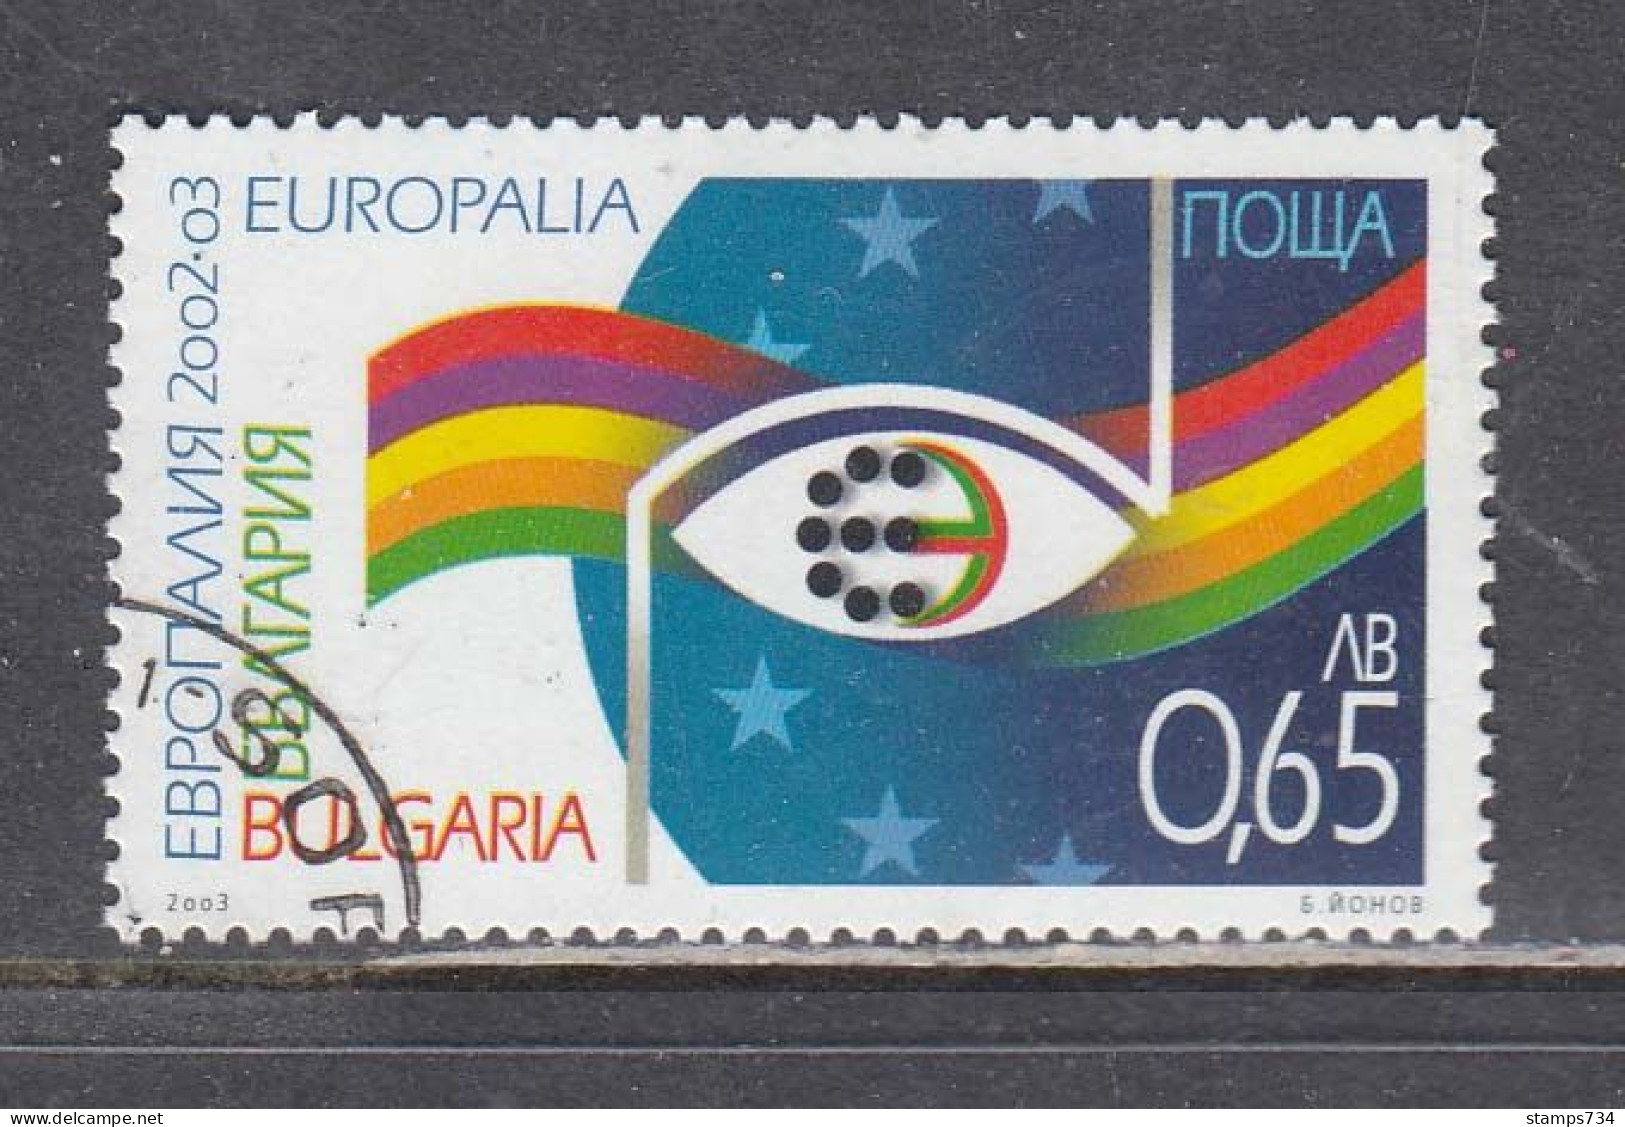 Bulgaria 2003 - European Culture Festival "Europalia 2003", Mi-Nr. 4586, Used - Used Stamps